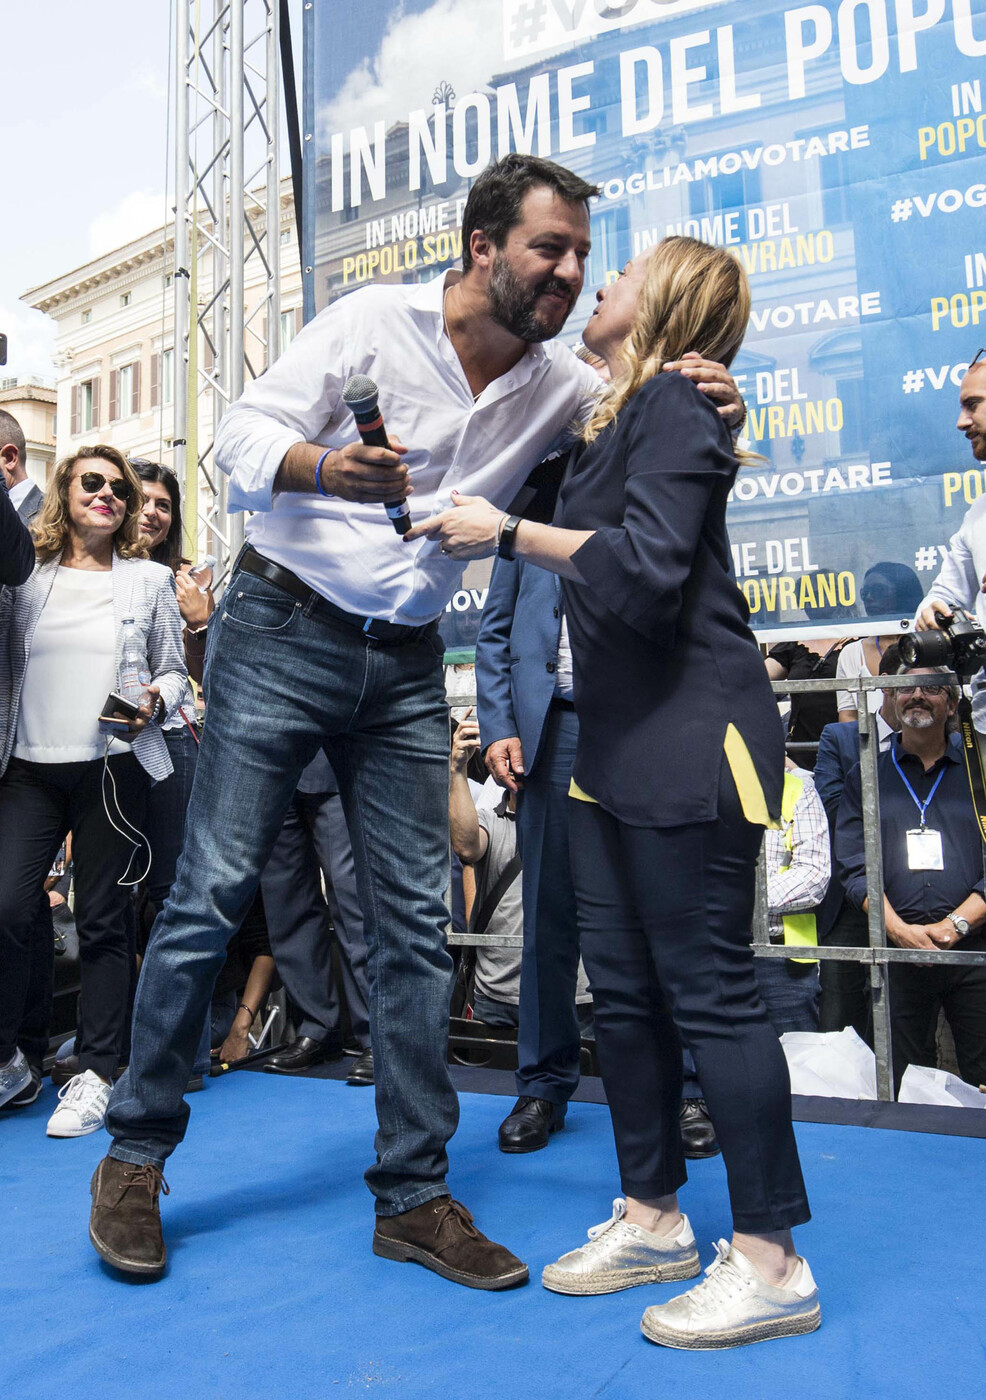 Meloni e Salvini in piazza contro il Governo Conte bis – FOTO